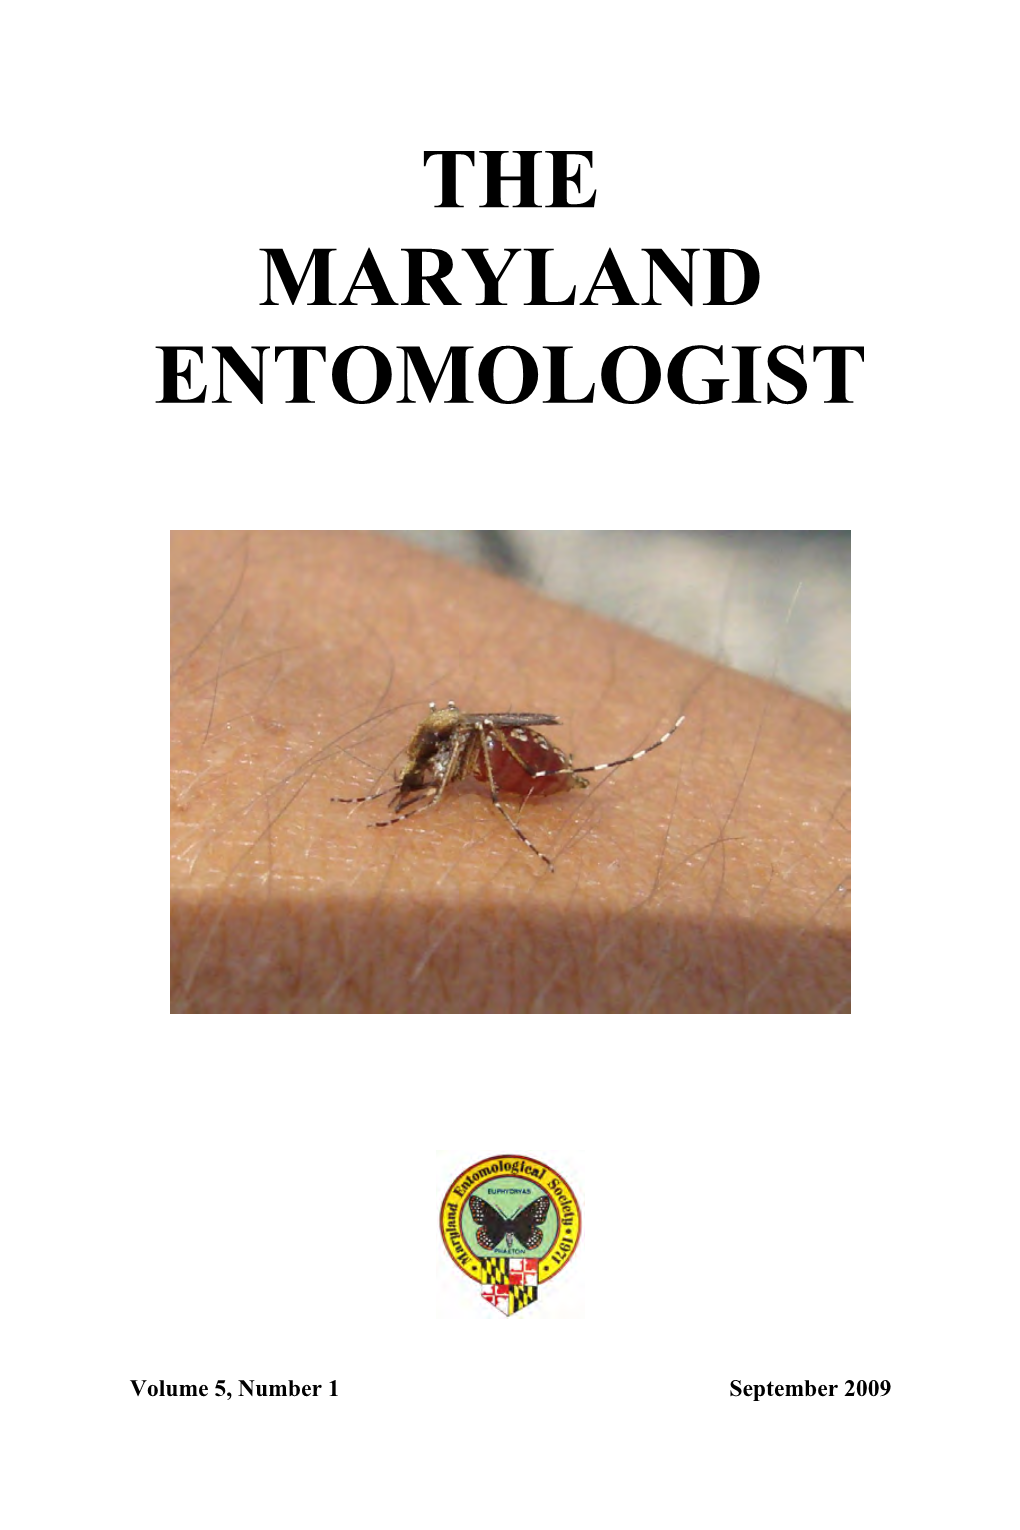 The Maryland Entomologist